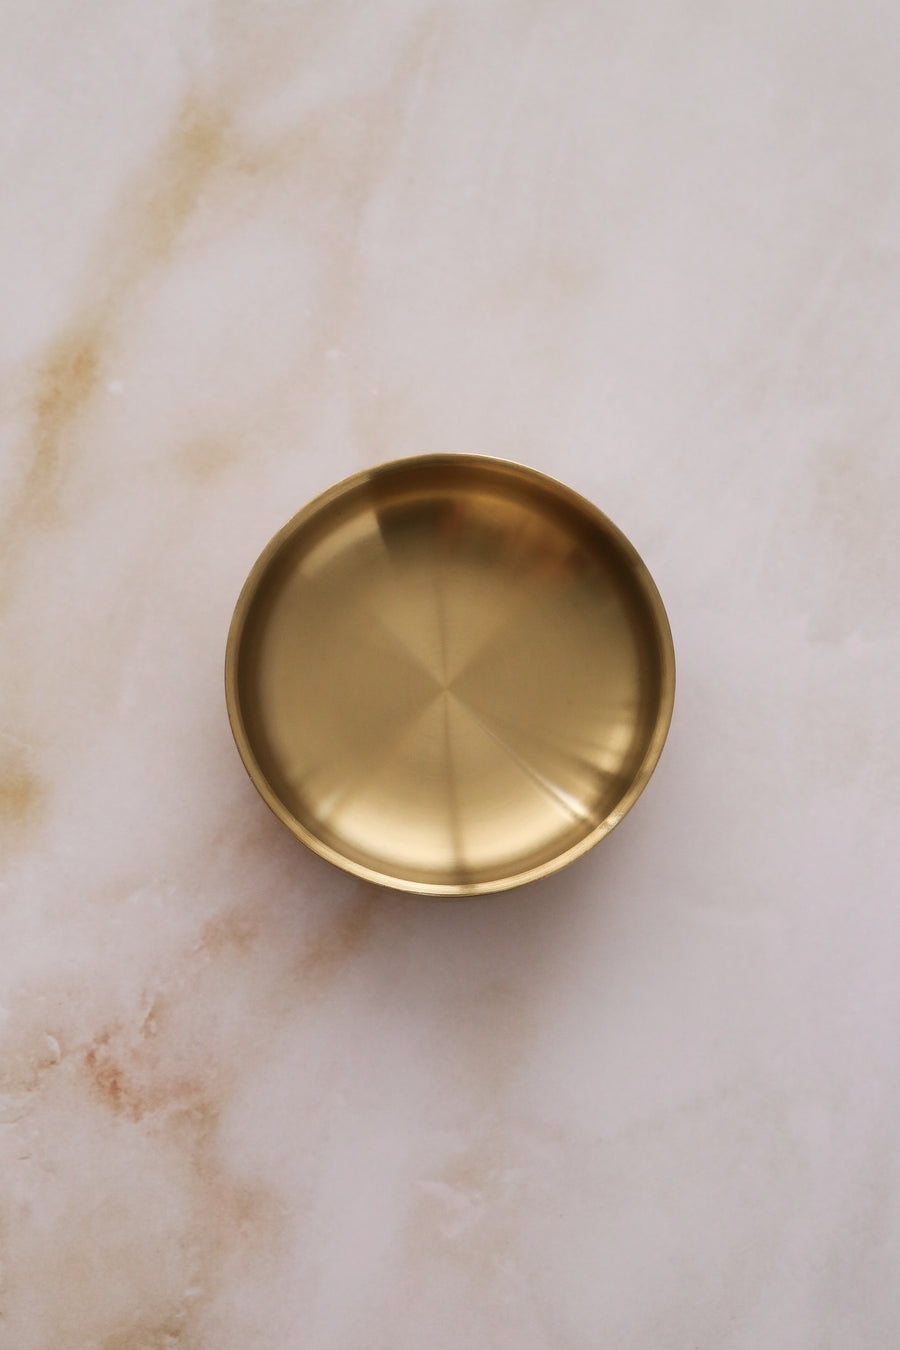 Gold Trinket Bowl